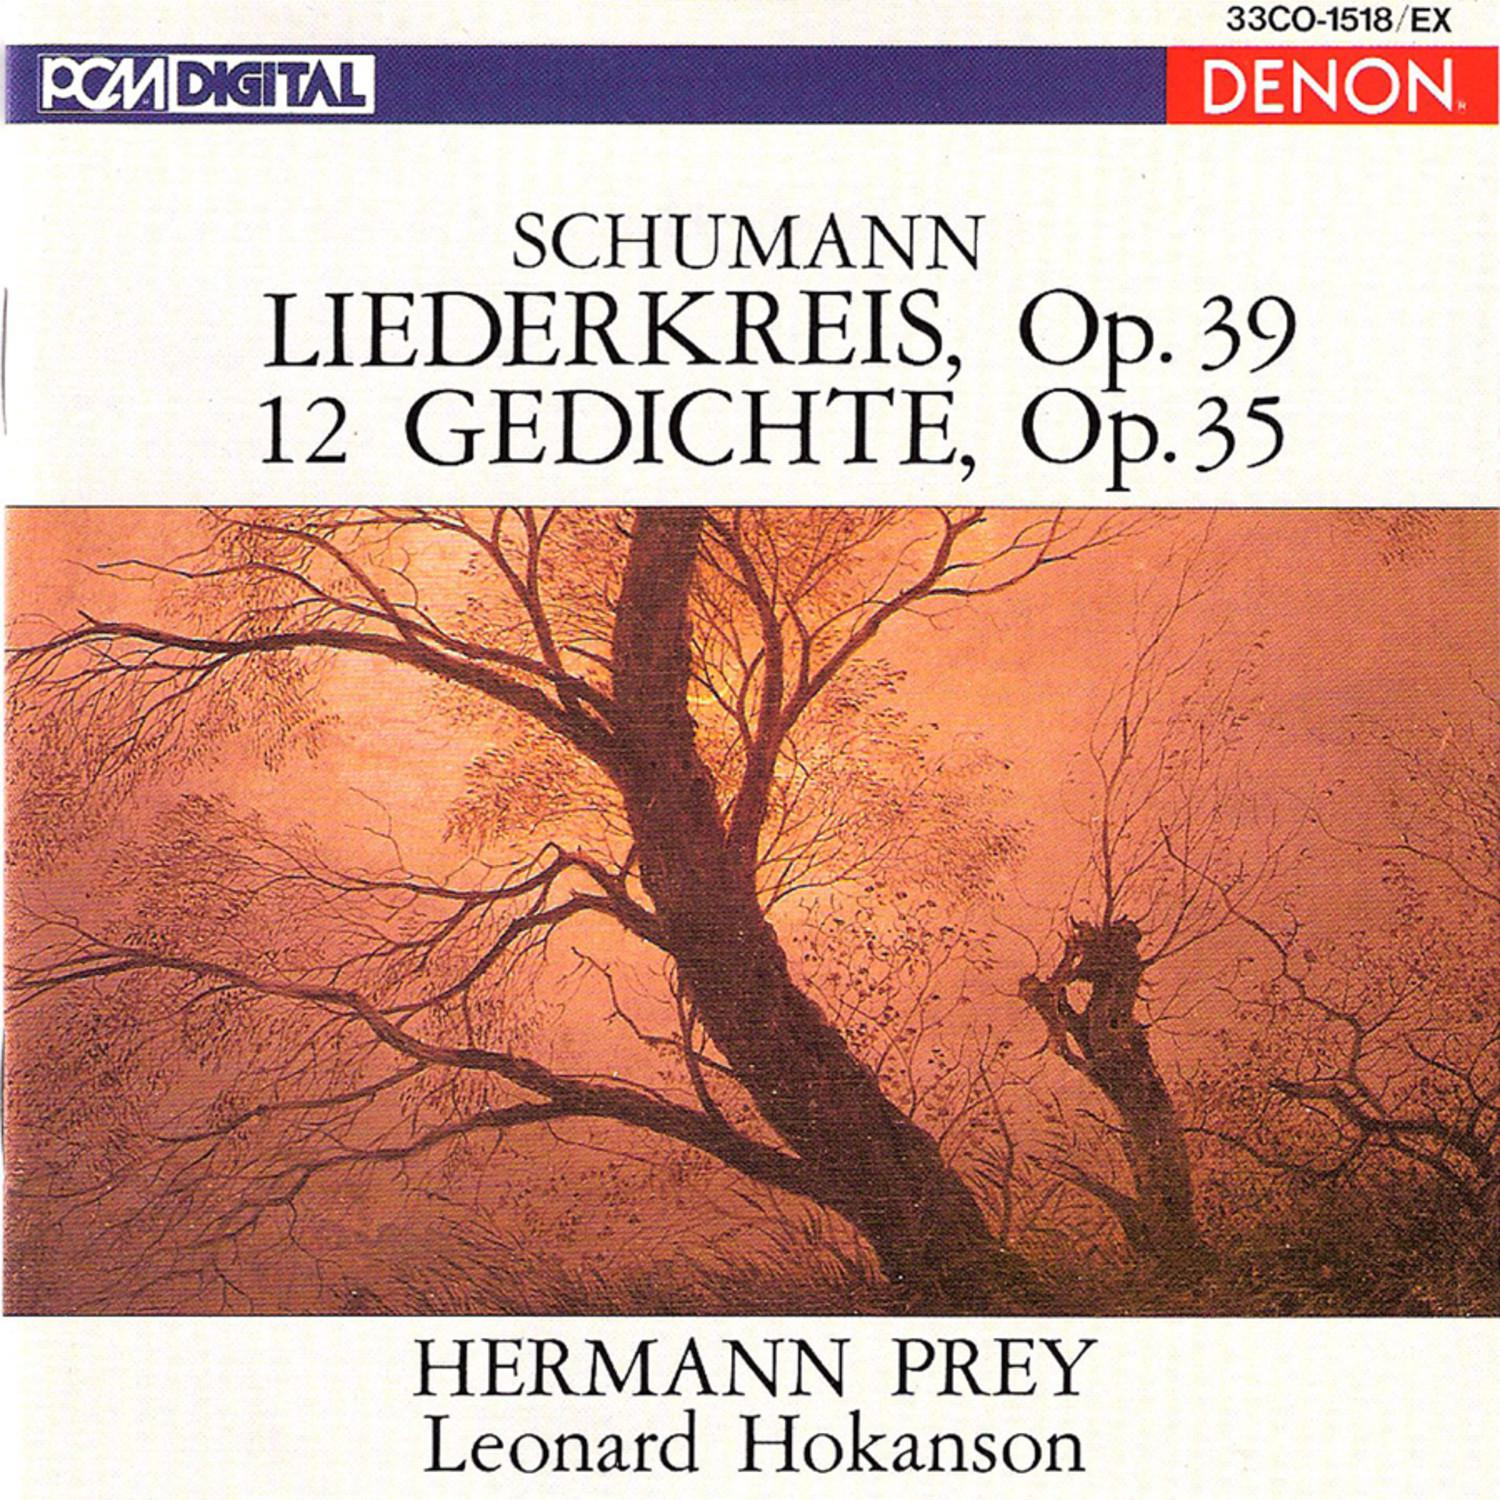 Schumann: Liederkreis, Op. 39 & 12 Gedichte, Op. 35